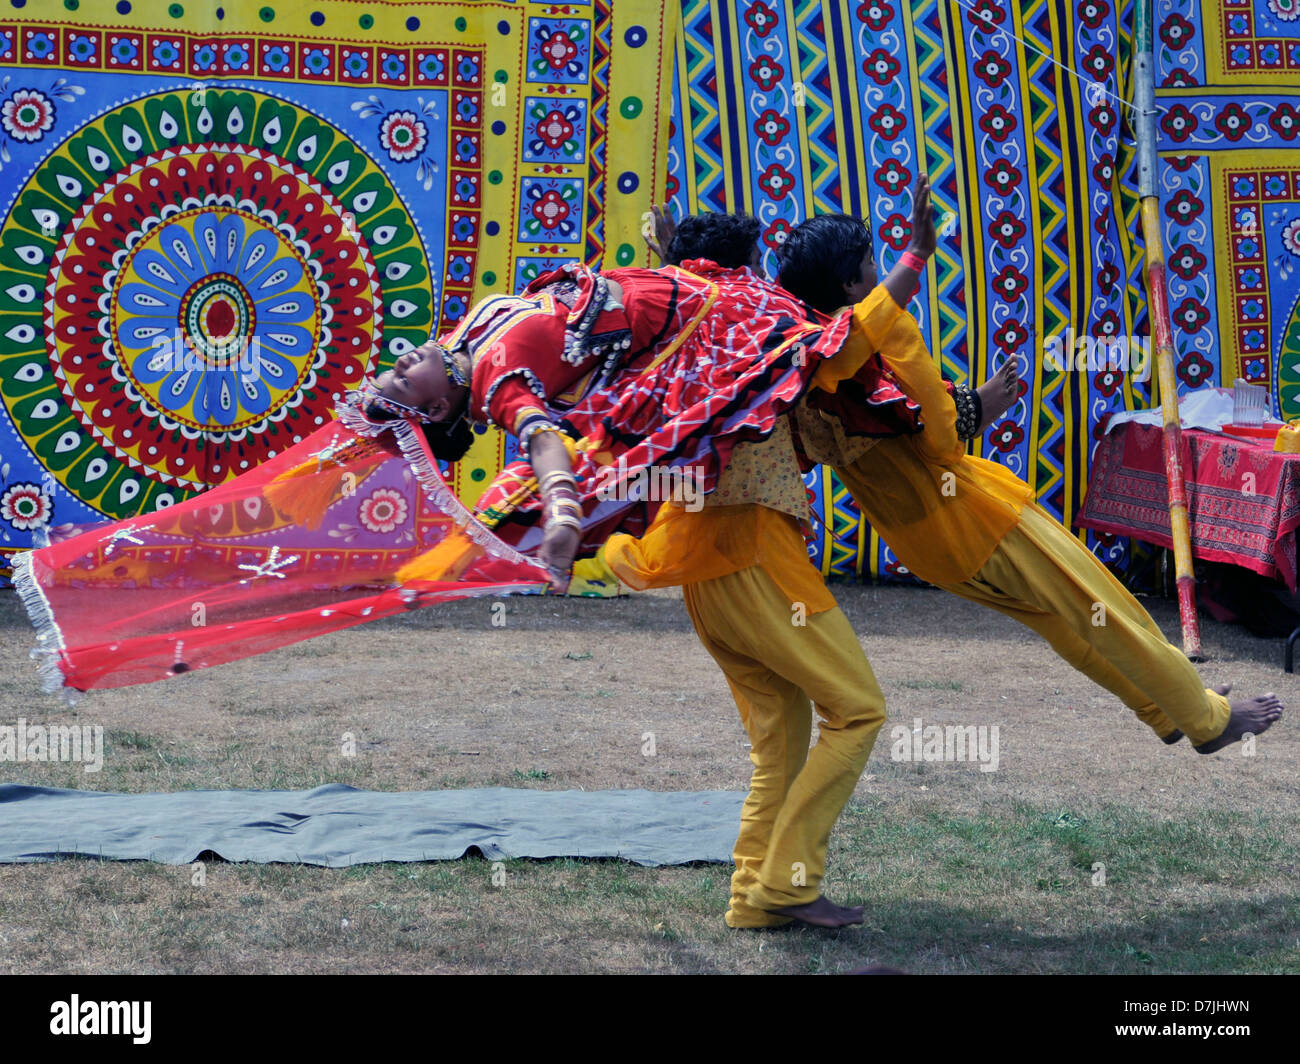 Les danseurs du Moyen-Orient,tapis,colorés.trois personnes,jaune,artistes,rouge,bleu,sortir,swinging Banque D'Images